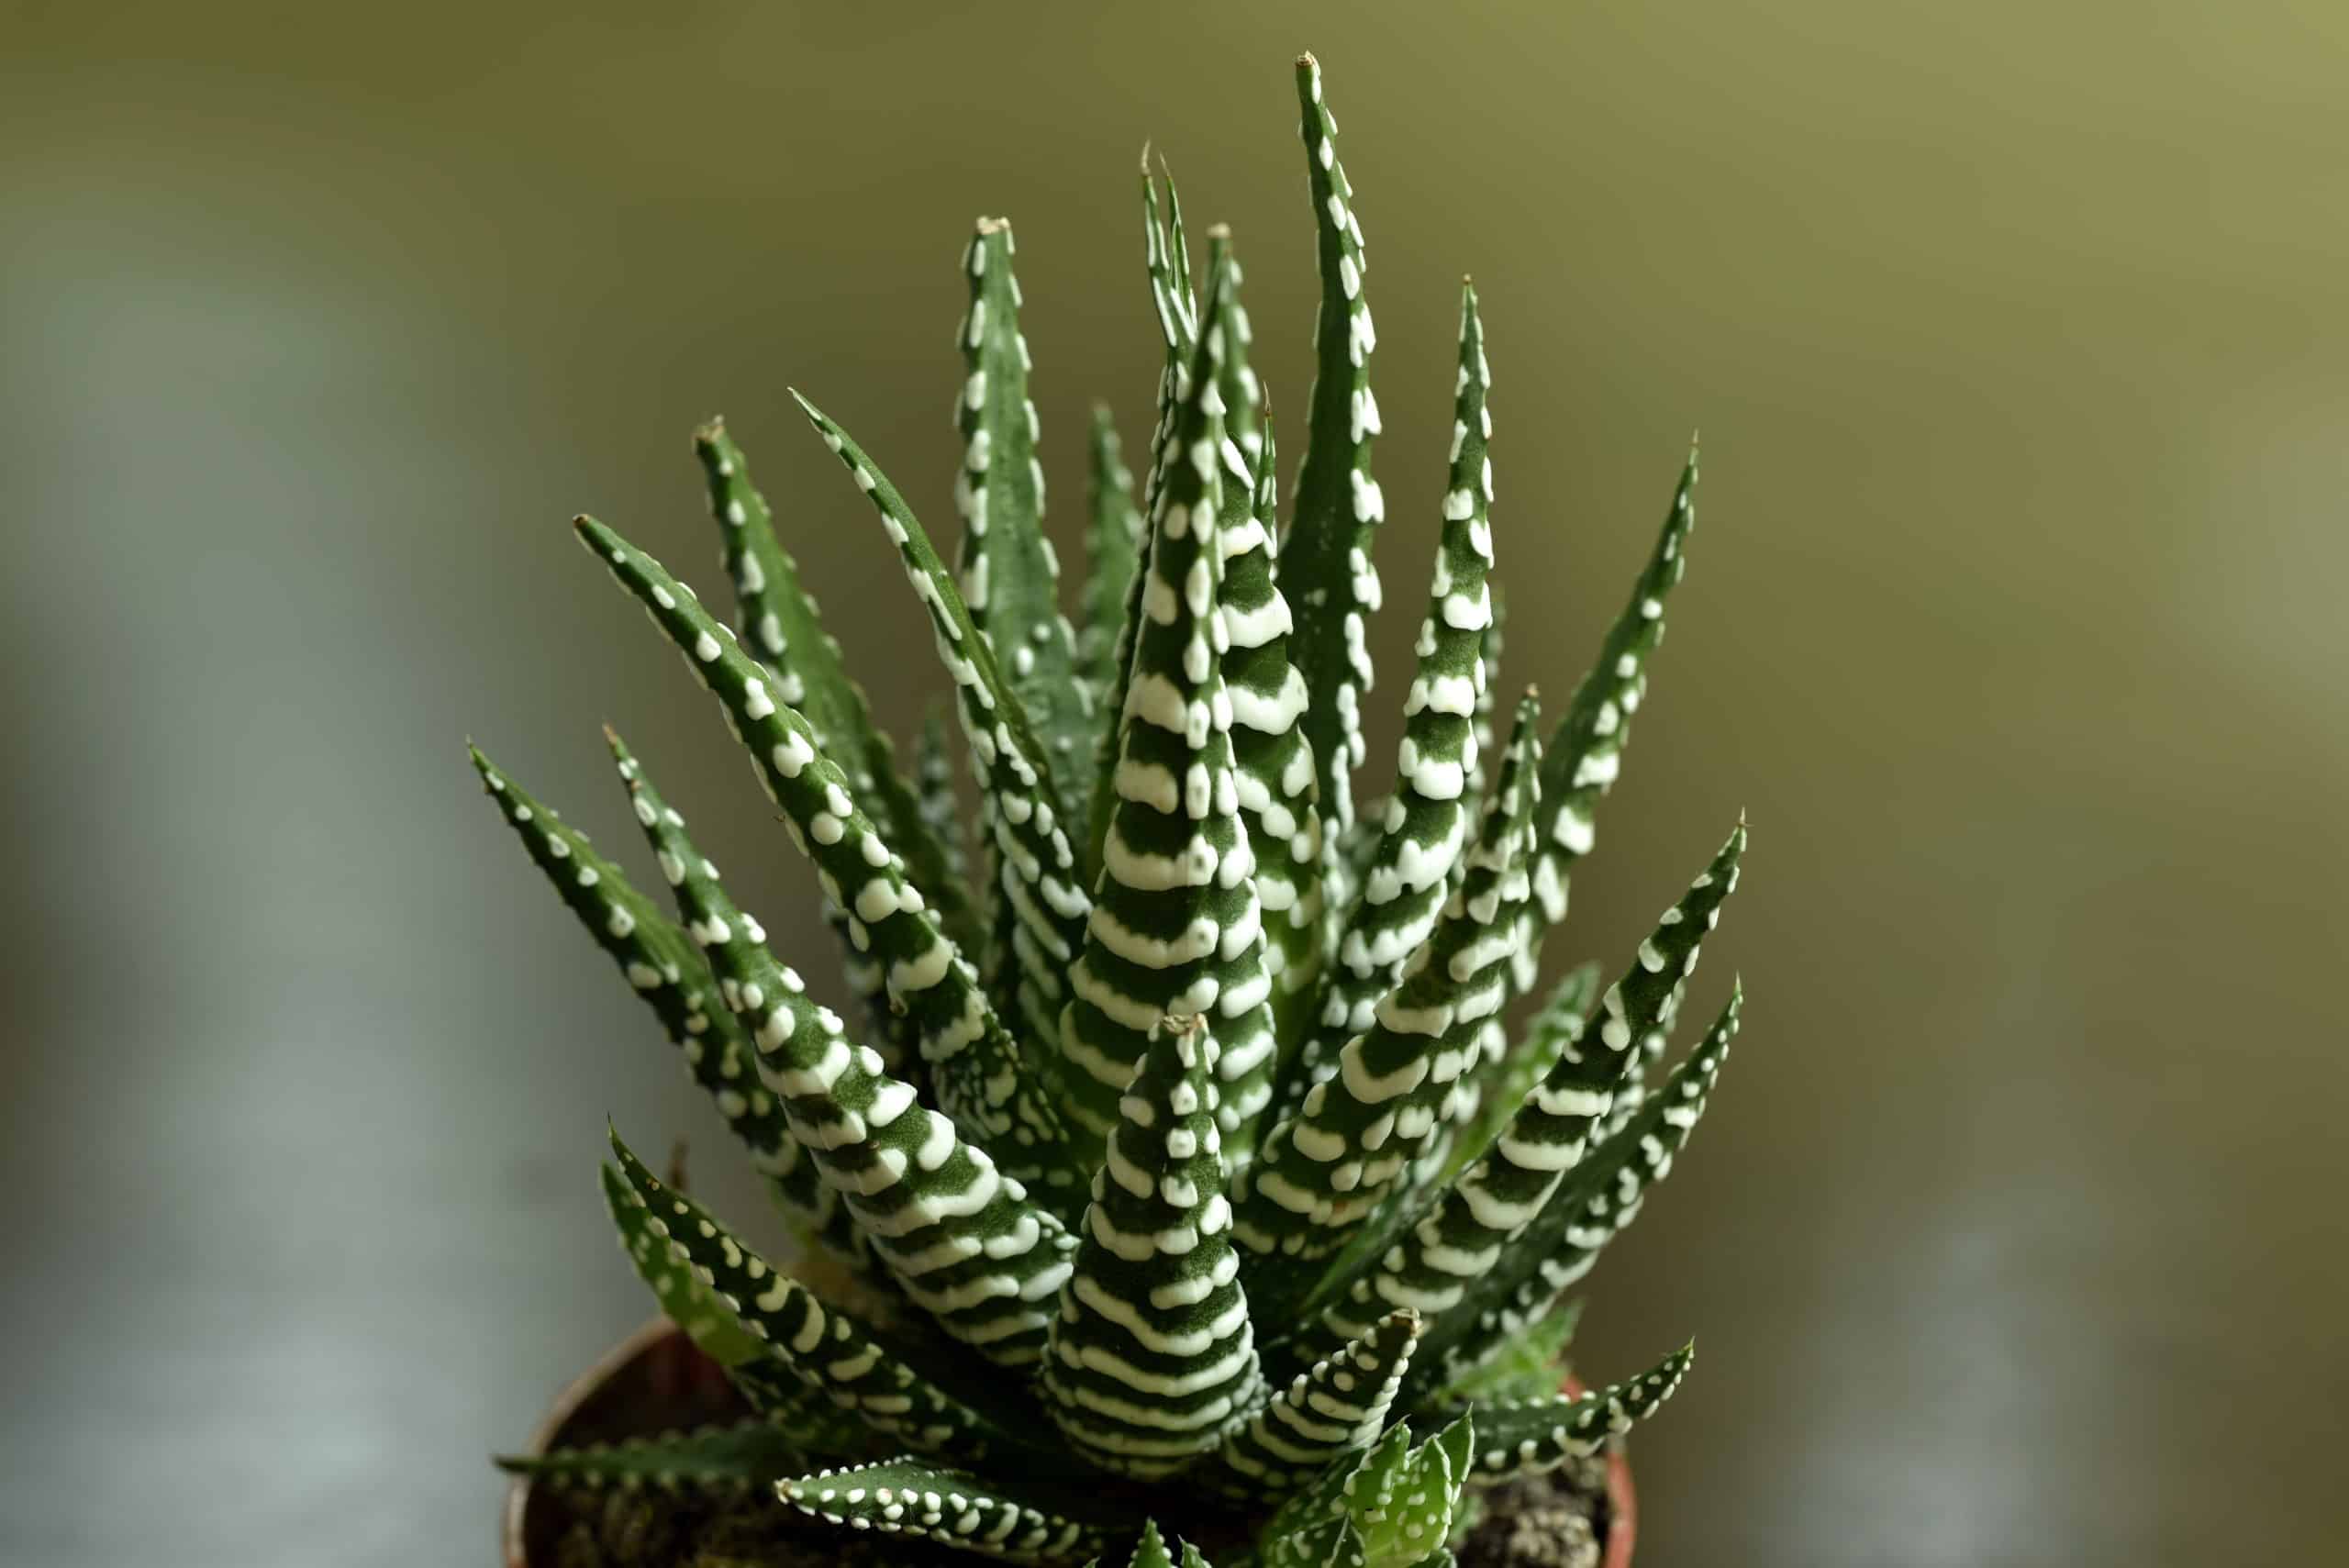 Zebra cactus plant, unique and a pet friendly plant